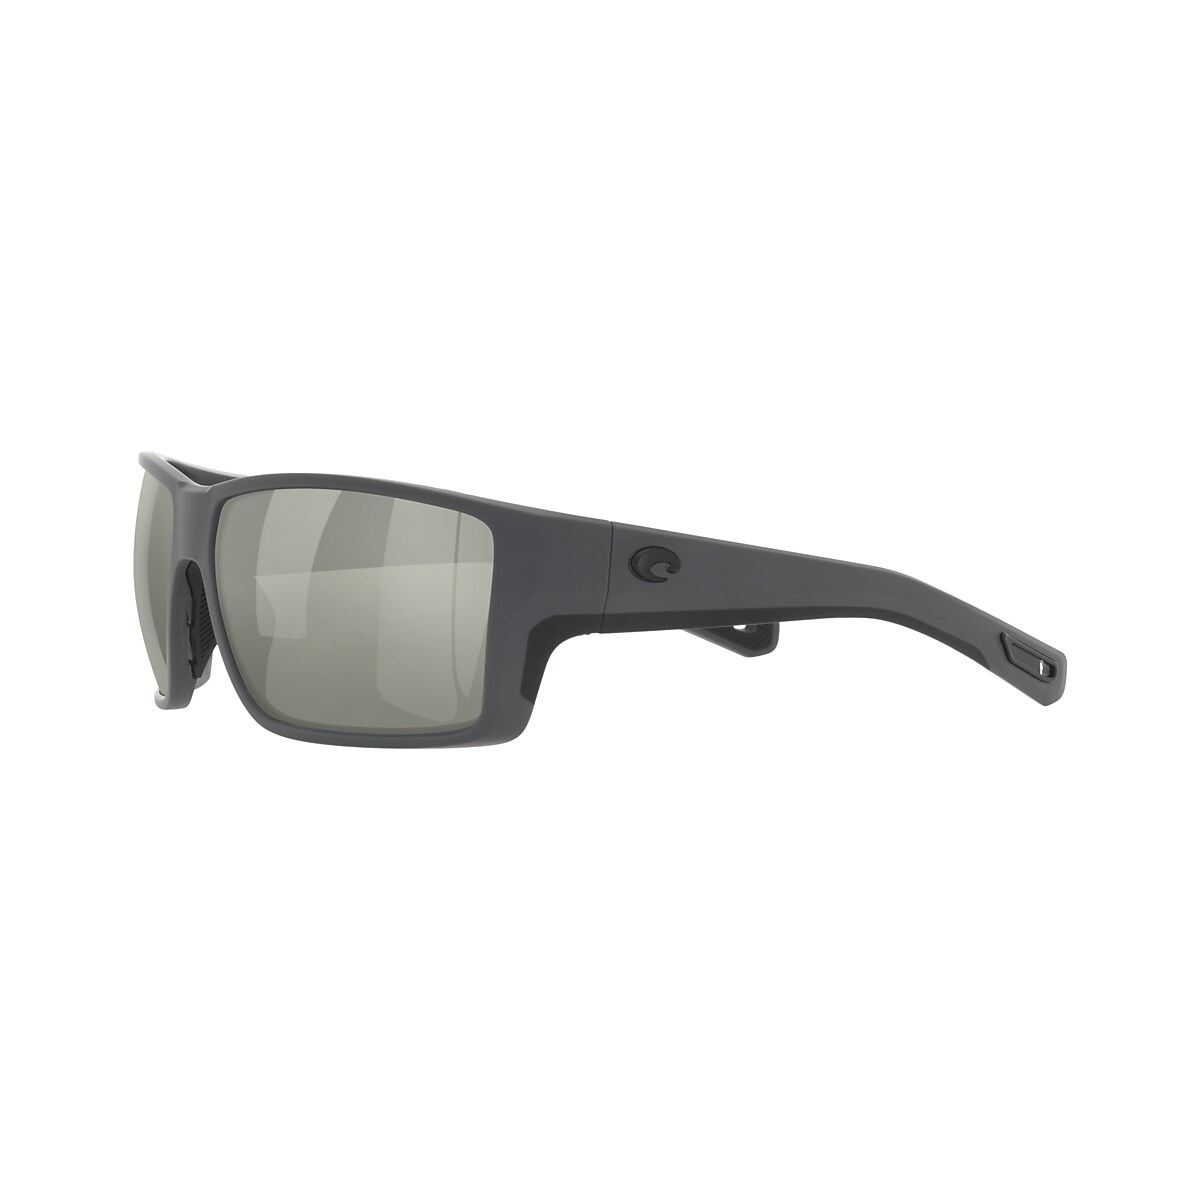 Reefton PRO Polarized Sunglasses in Gray Silver Mirror | Costa Del